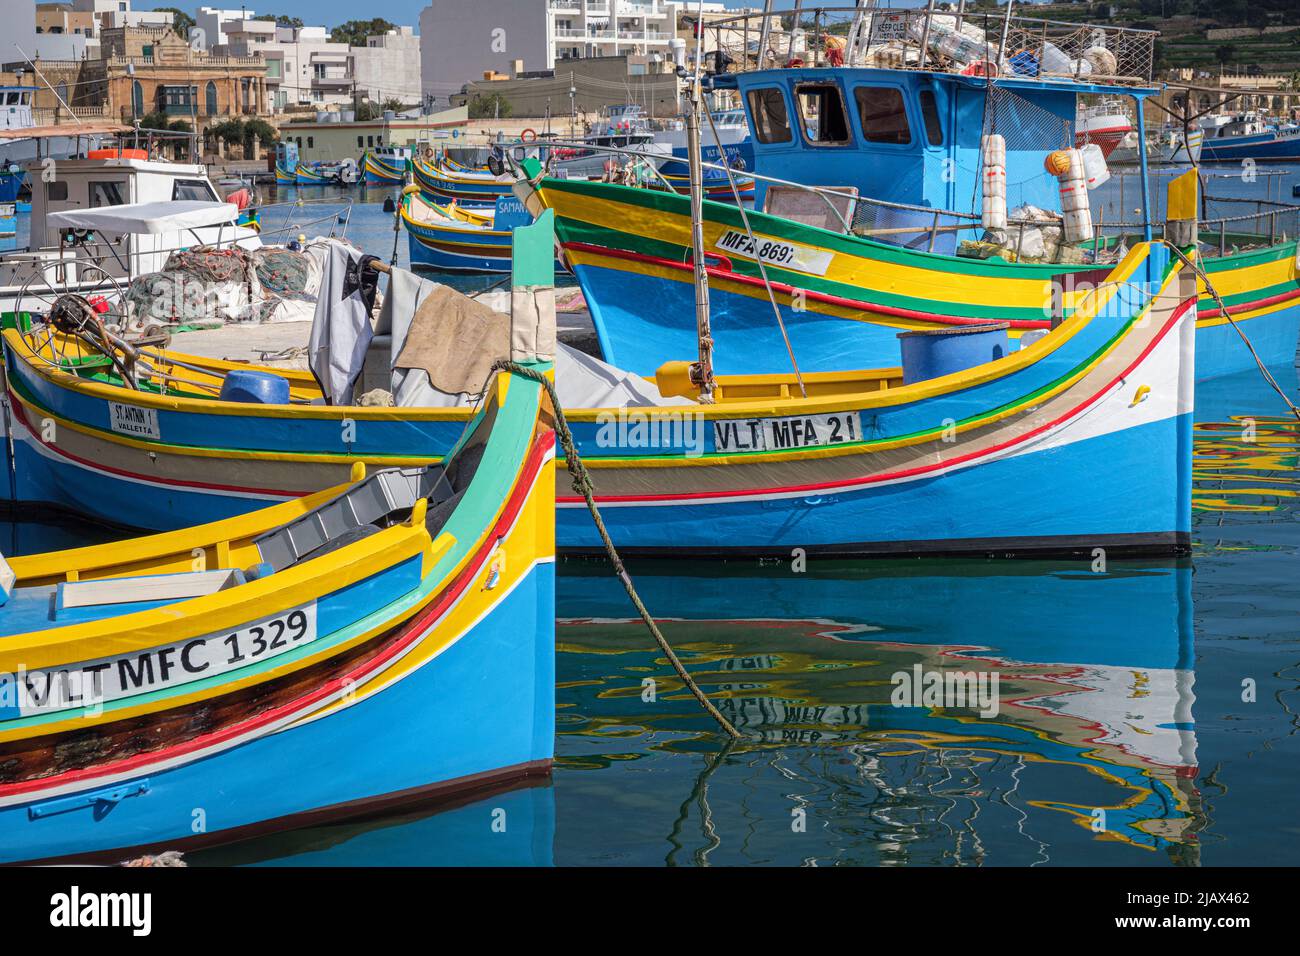 Traditionelle bunt bemalte Fischerboote, bekannt als Luzzus, im Hafen von Marsaxlokk, Malta Stockfoto